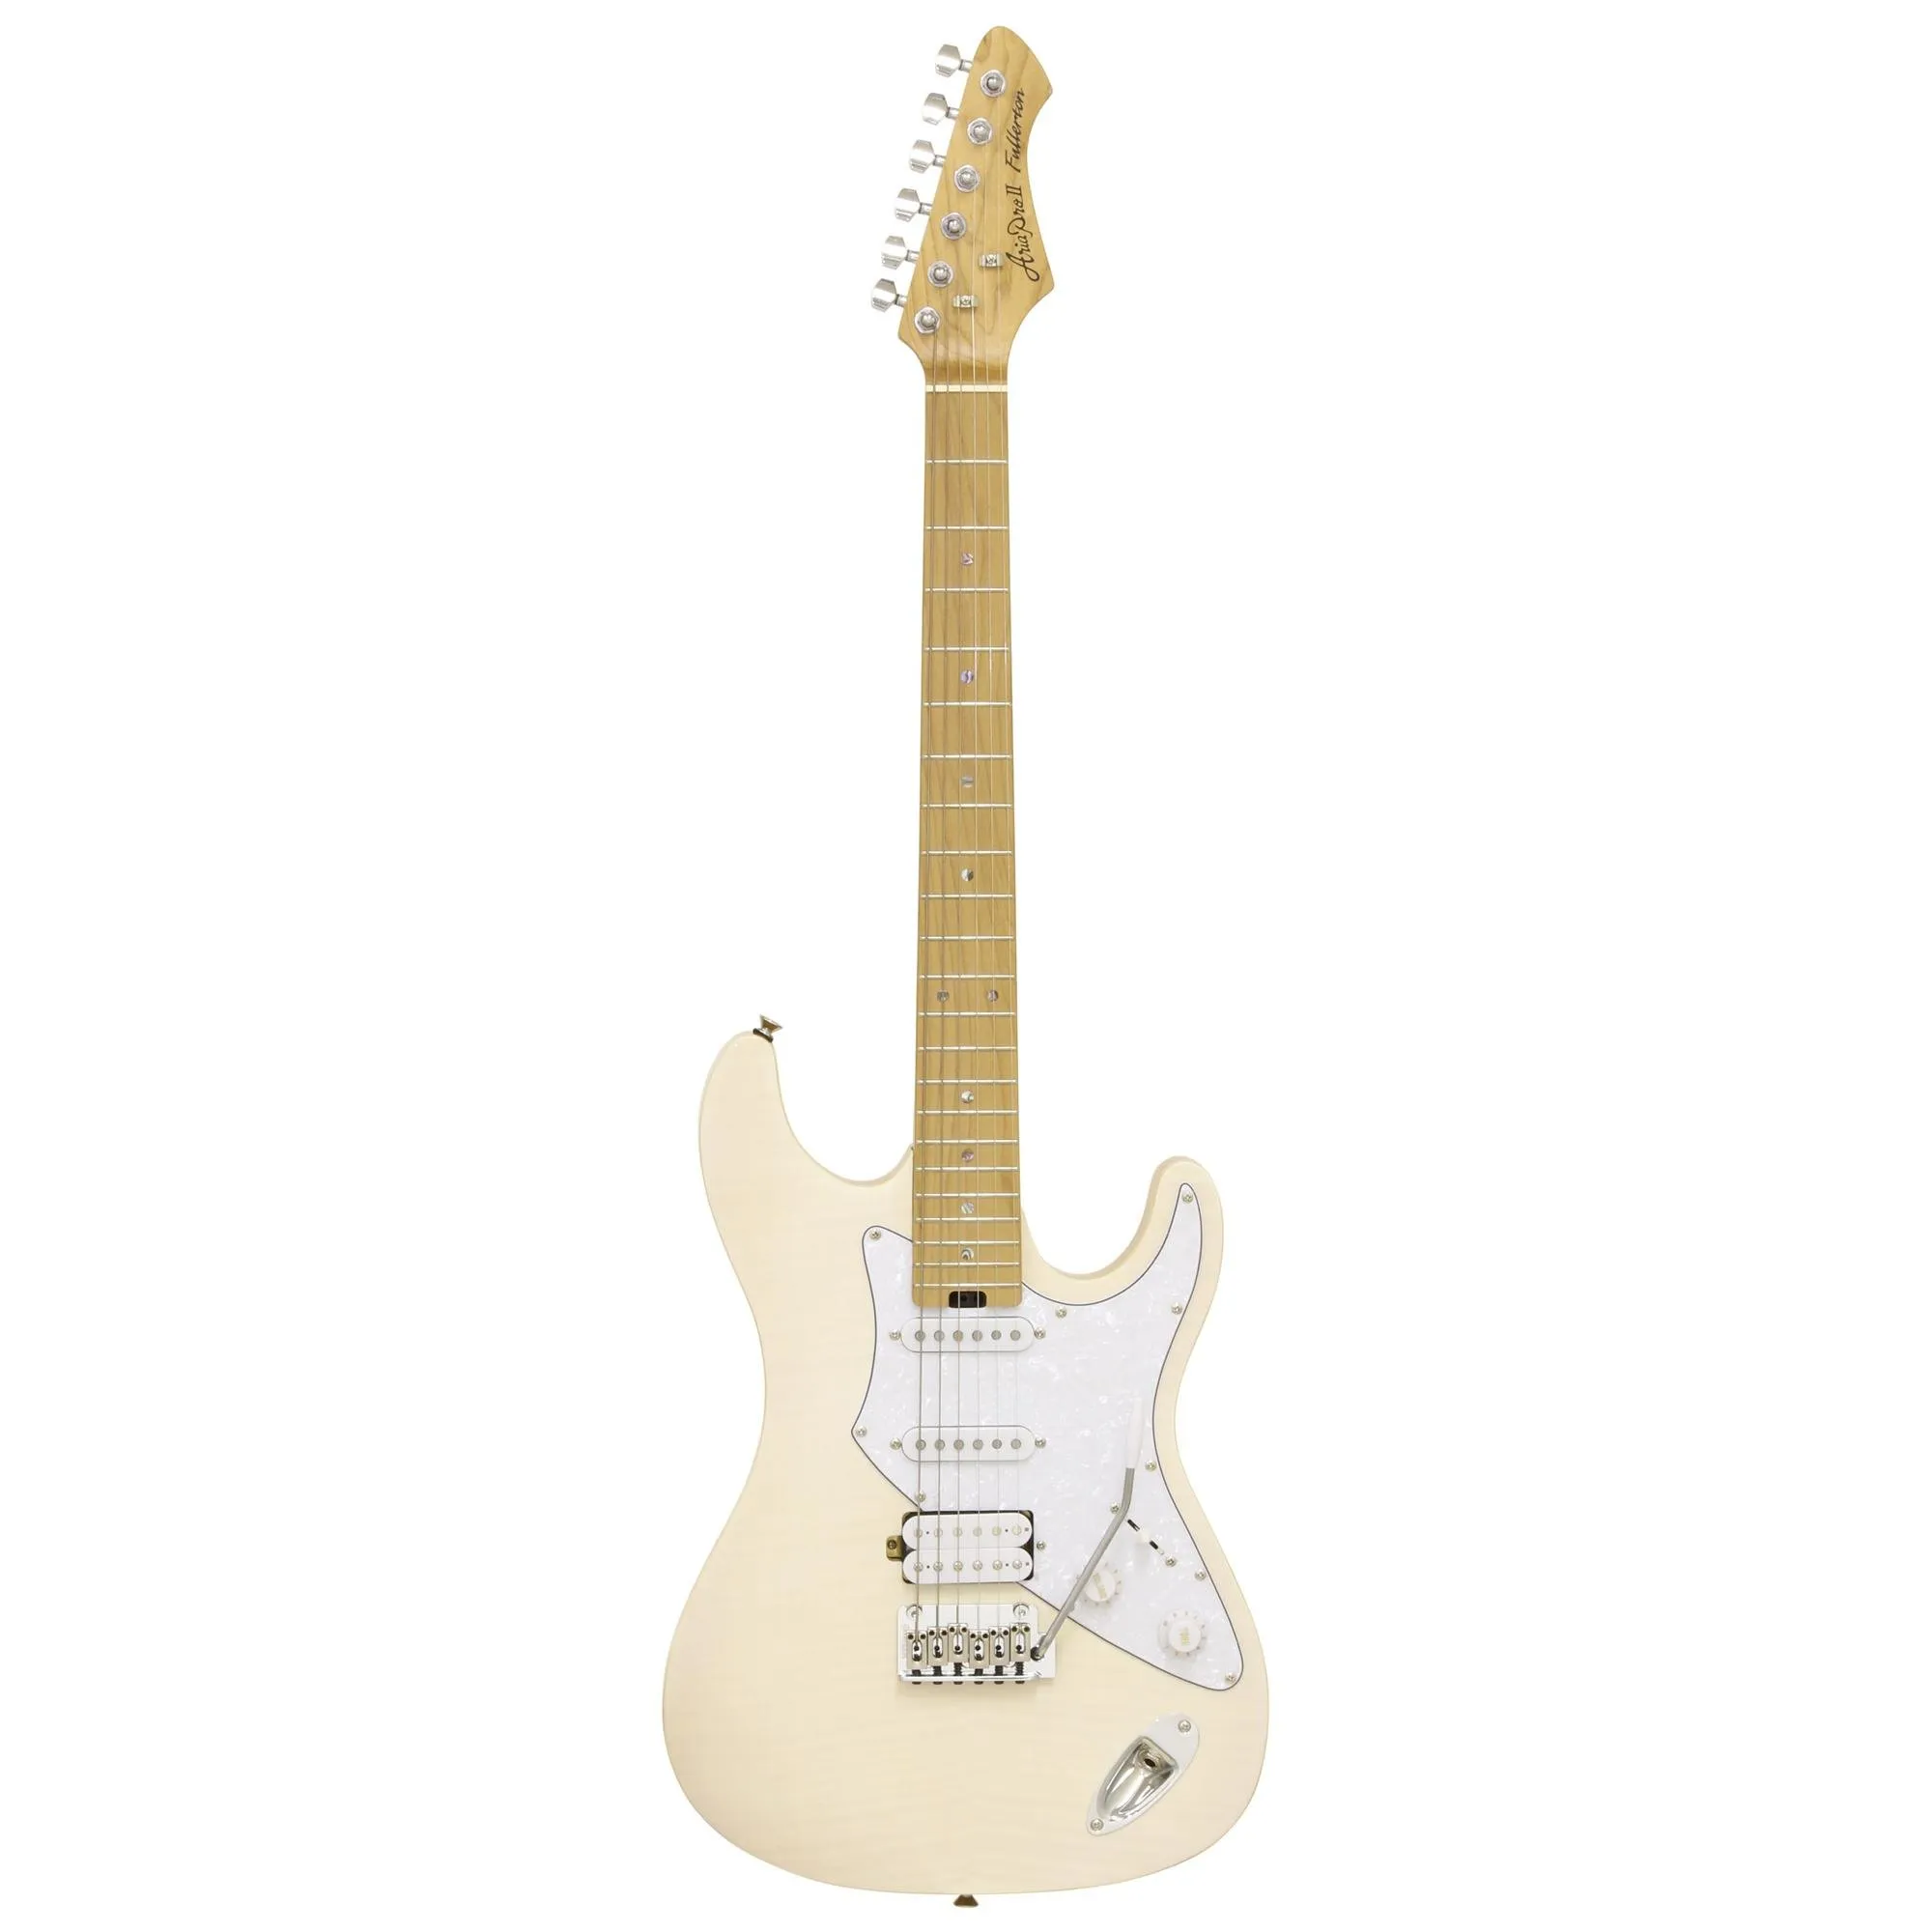 Guitarra Aria 714-MK2 Fullerton Marble White por 2.904,00 à vista no boleto/pix ou parcele em até 12x sem juros. Compre na loja Mundomax!